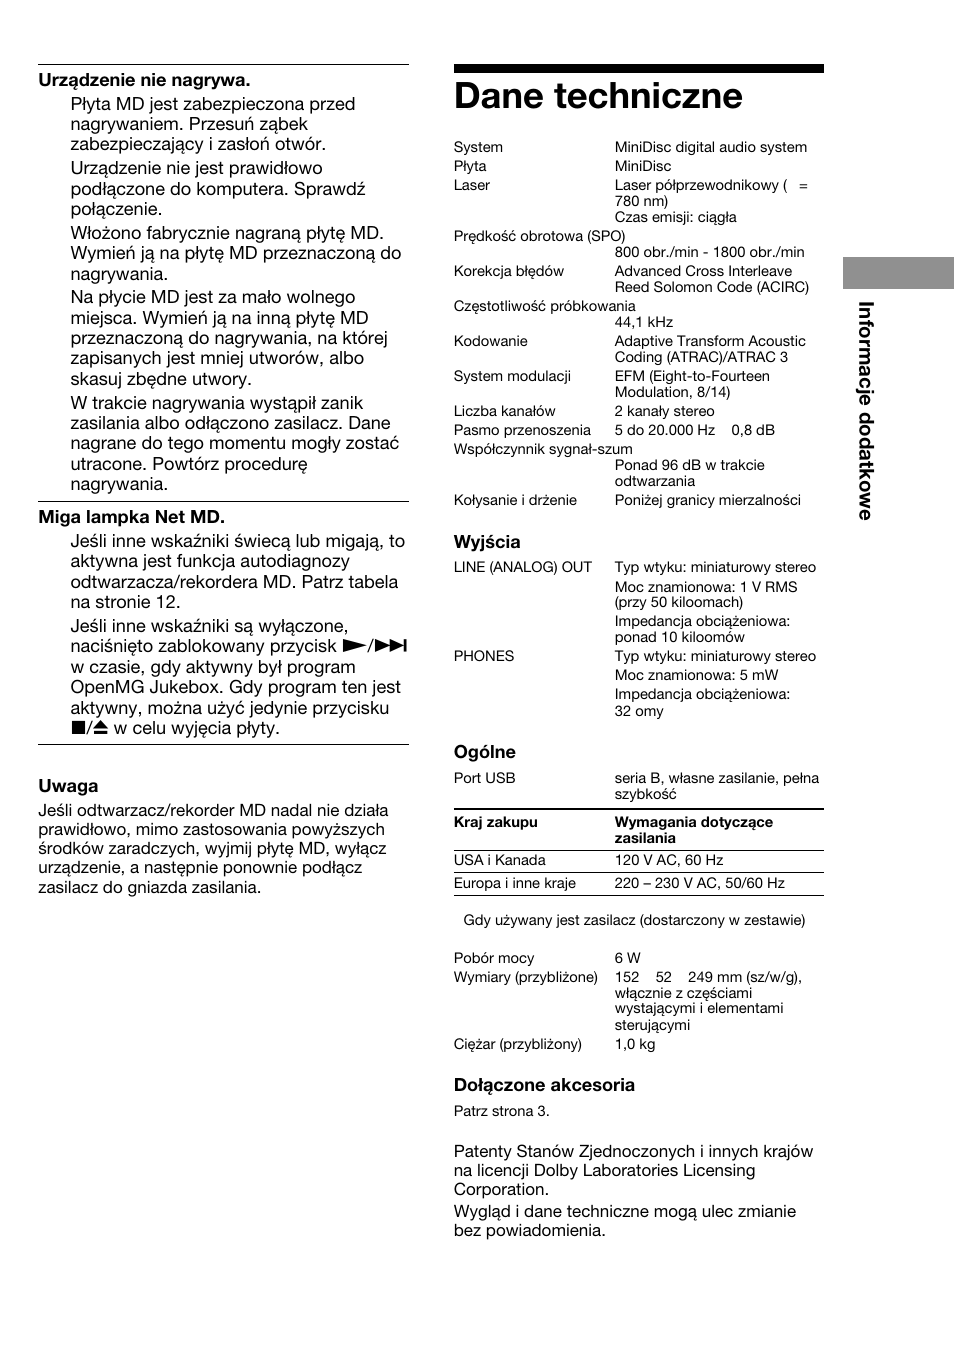 Dane techniczne, Informacje dodatkowe | Sony MDS-NT1 Benutzerhandbuch | Seite 59 / 60